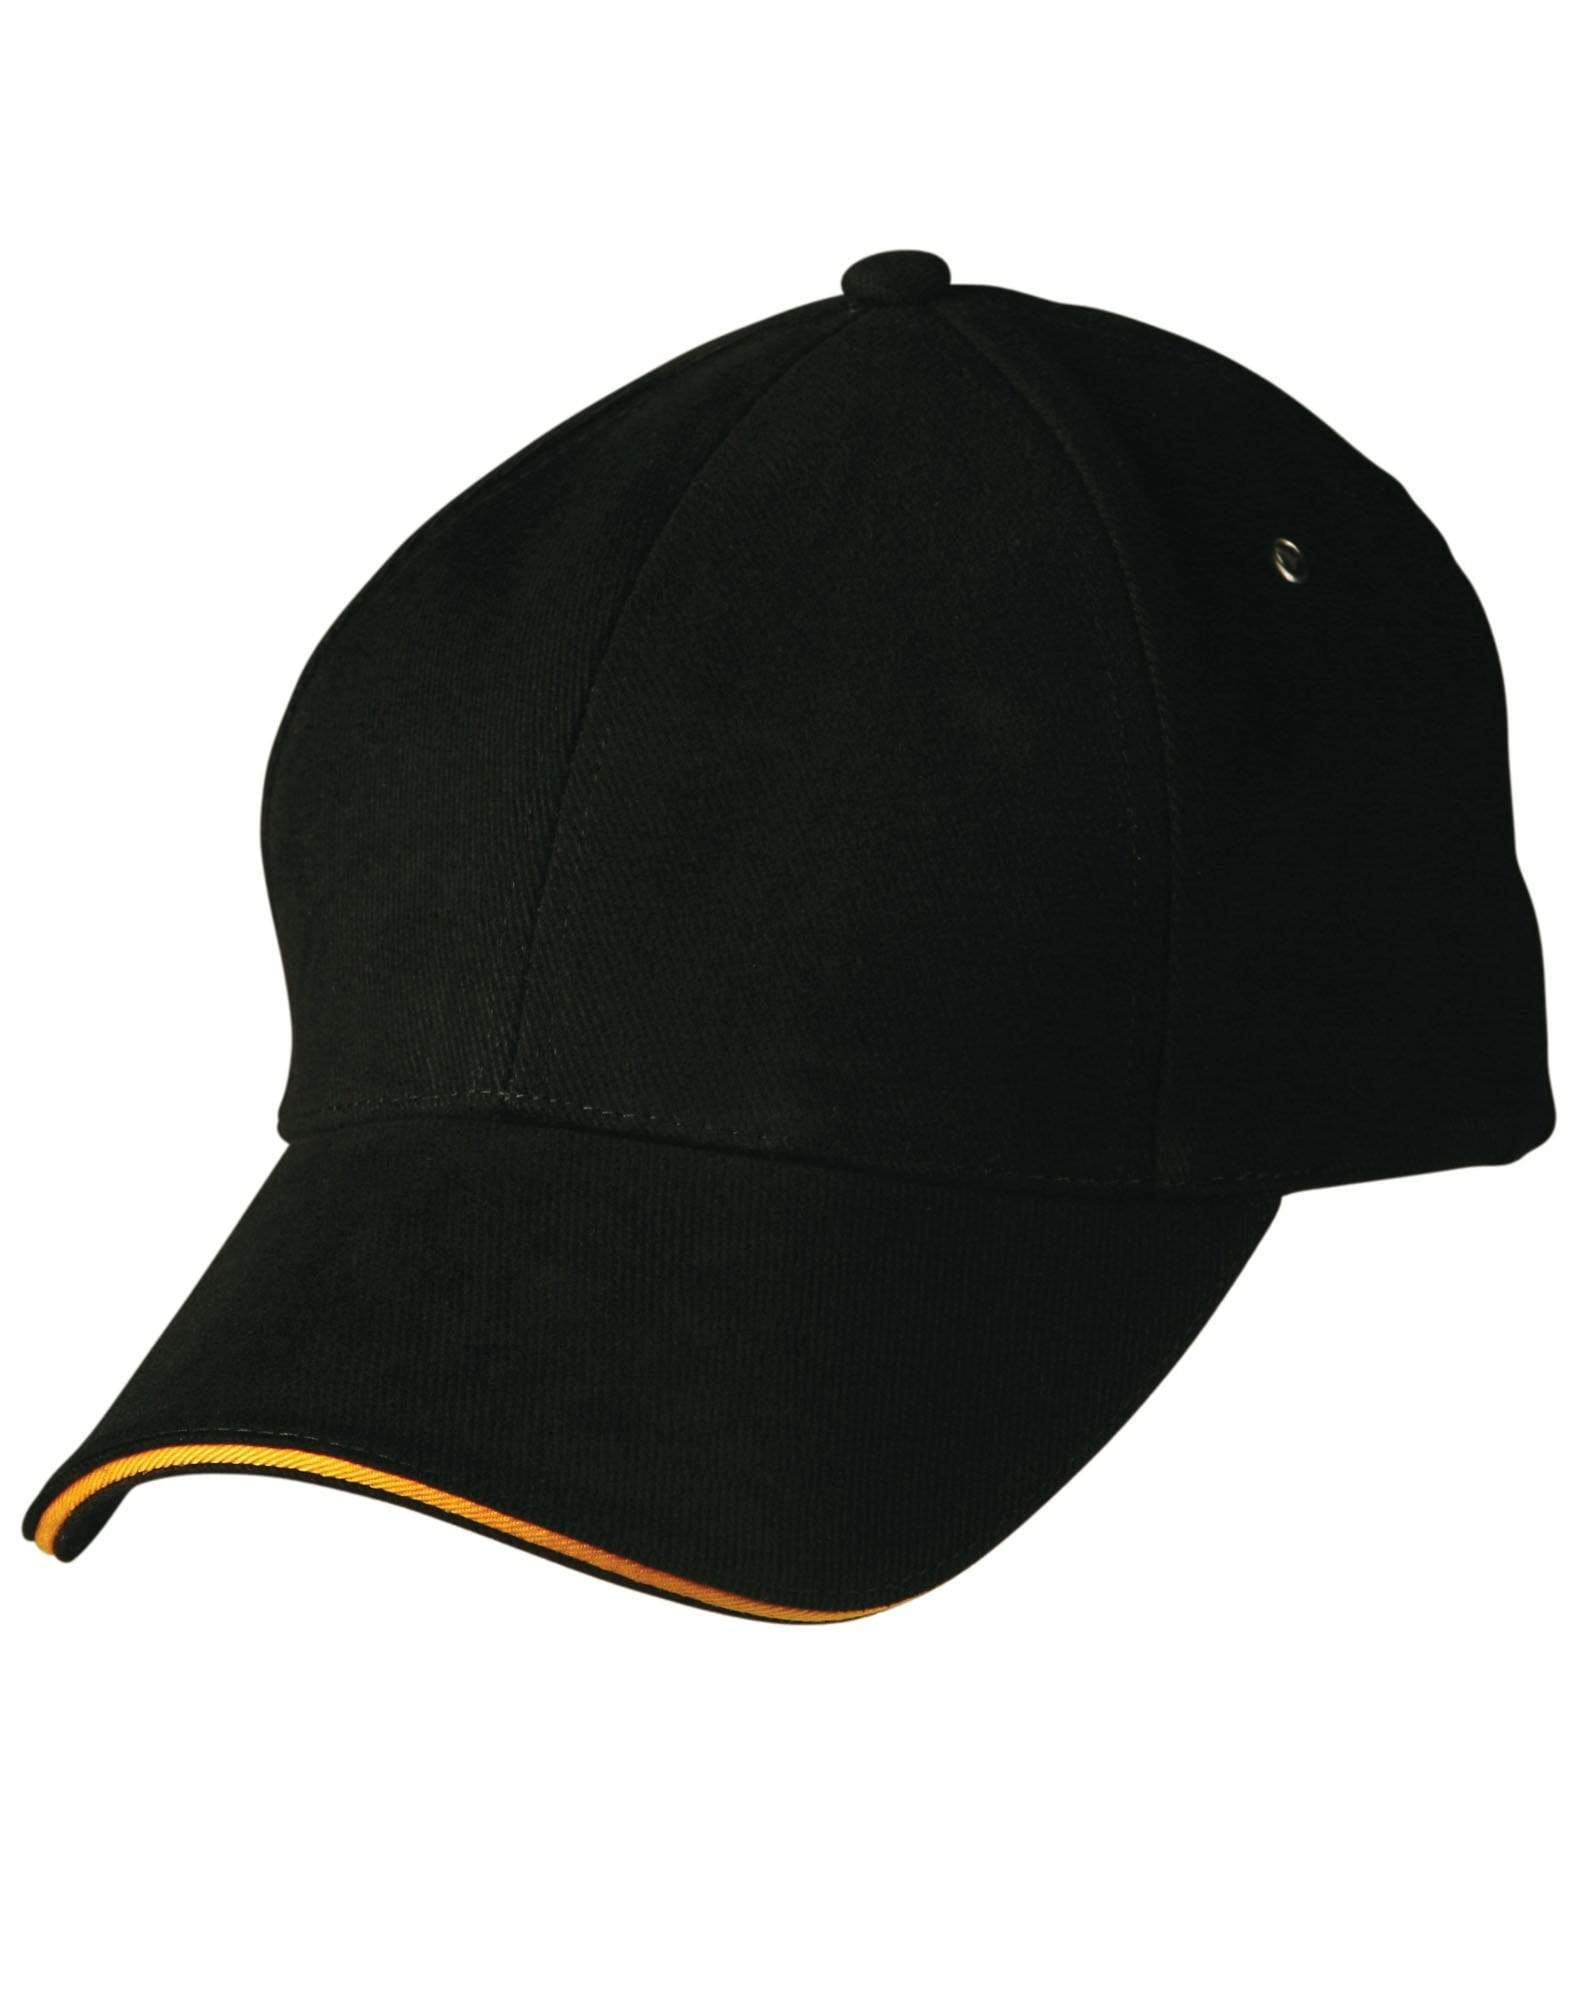 Sandwich Peak Cap Ch18 Active Wear Winning Spirit Black/Gold One size fits most 